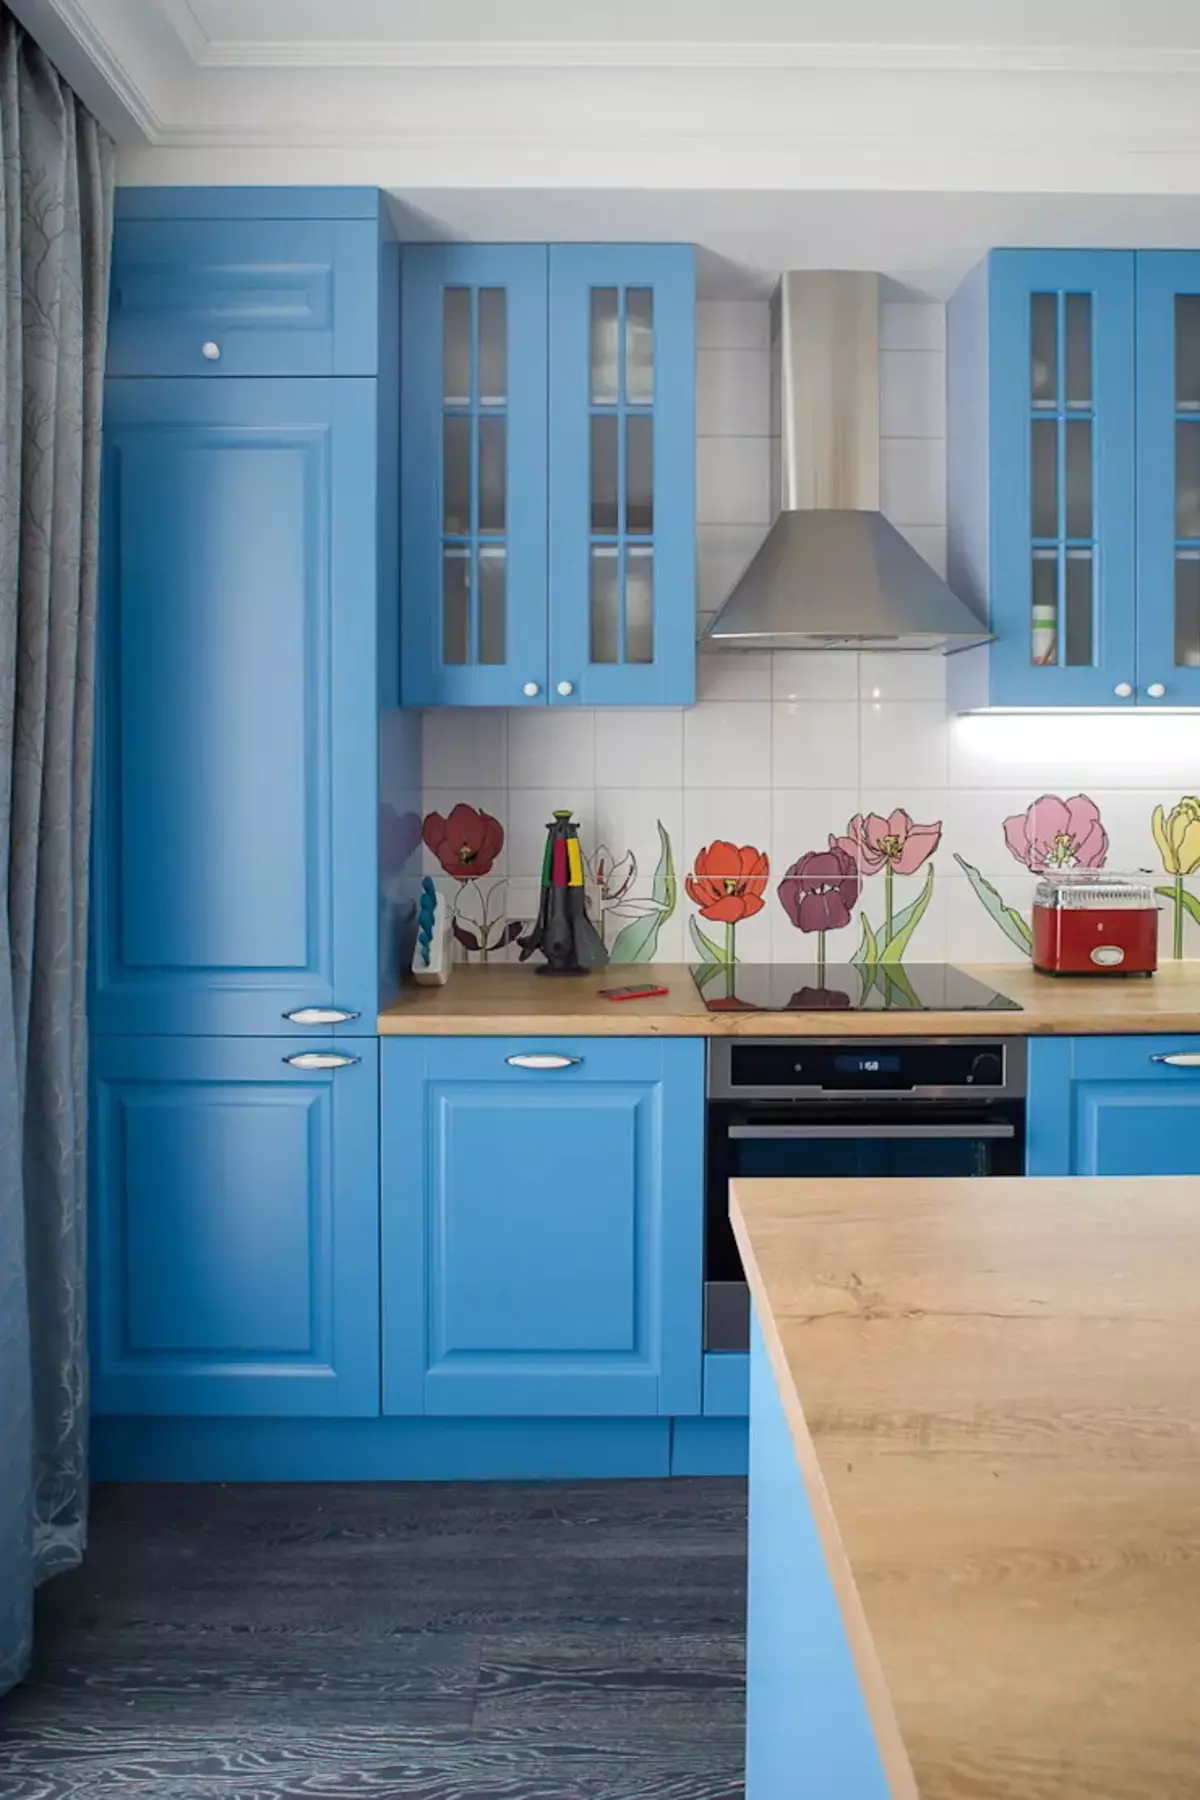 藍廚房（82張照片）：在藍色廚房套裝內部合併哪種顏色？淺藍色和深藍色色調的廚房設計 9555_73